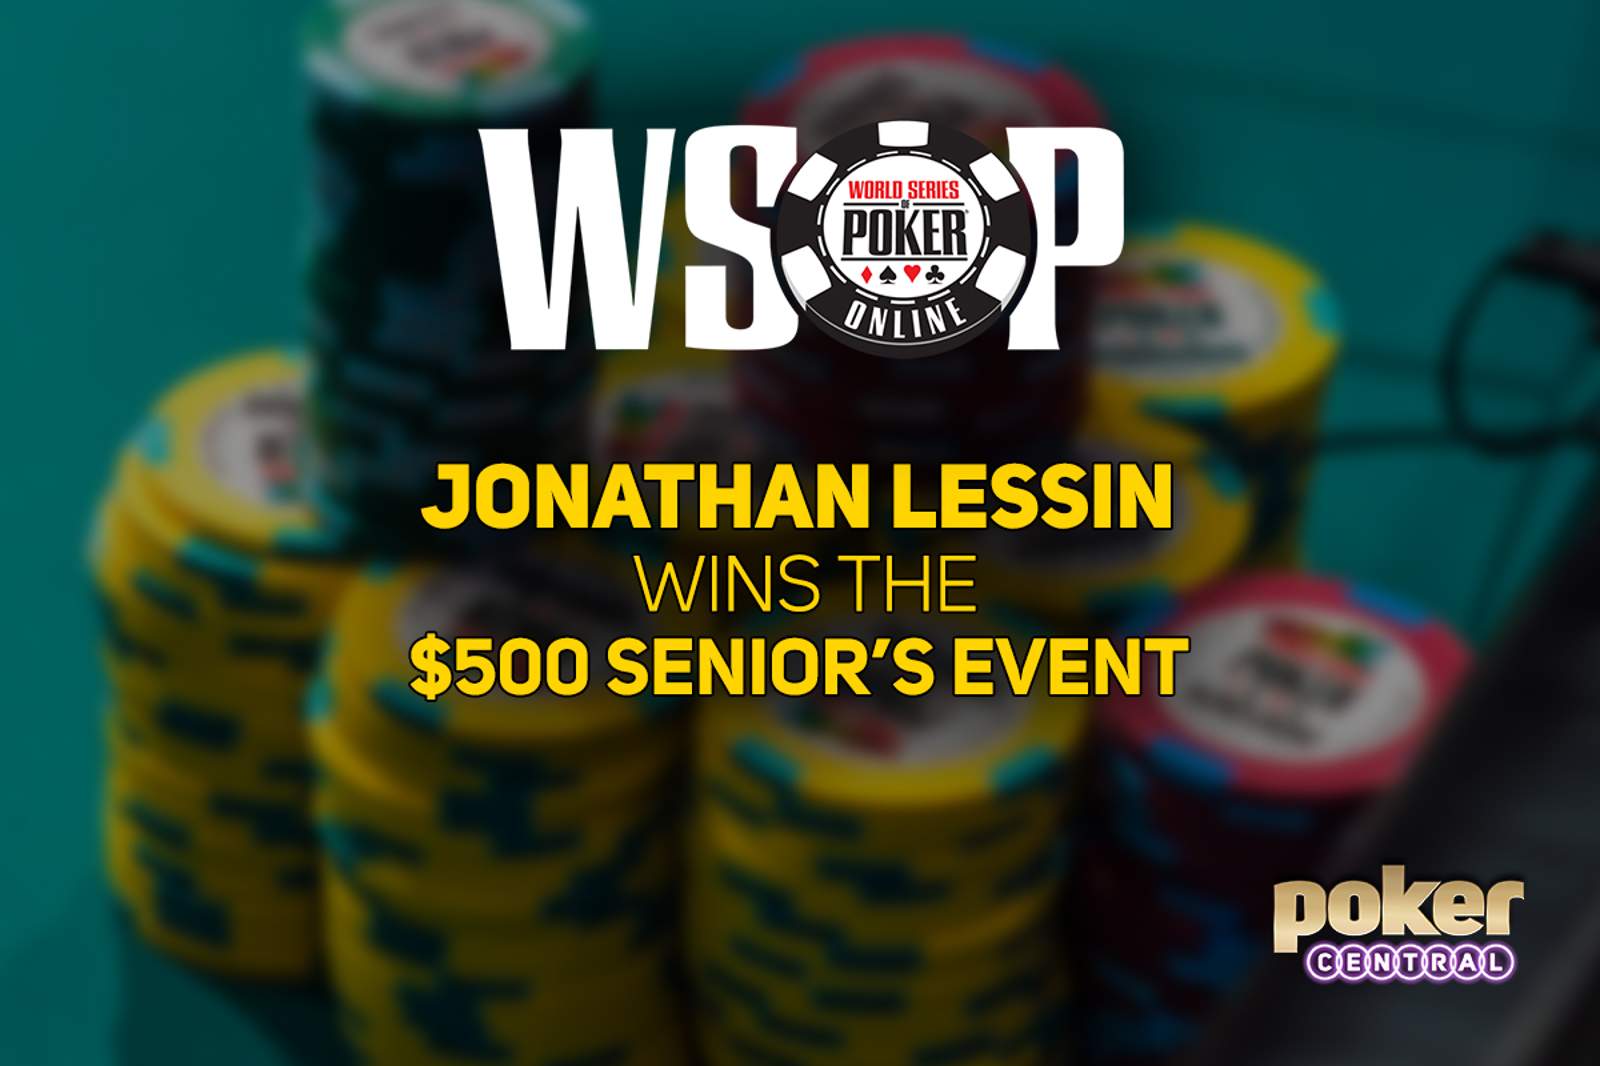 Jonathan Lessin Wins First Bracelet in WSOP Online $500 Senior's Event for $64,411